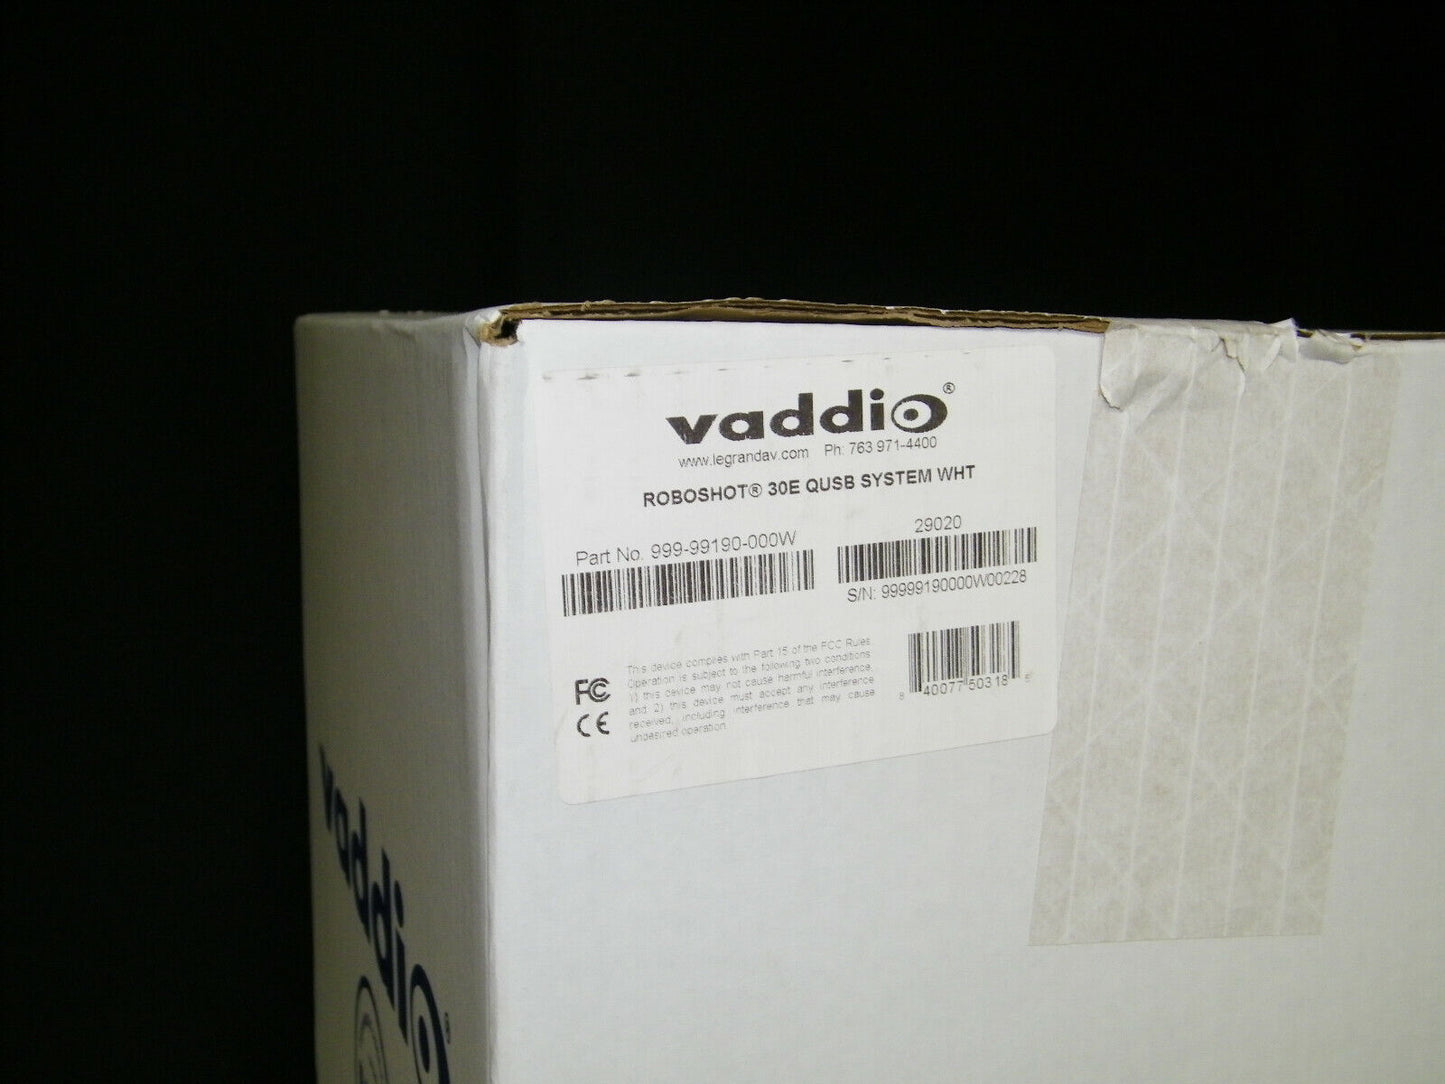 Vaddio RoboSHOT 30E QUSB System / 999-99190-000W